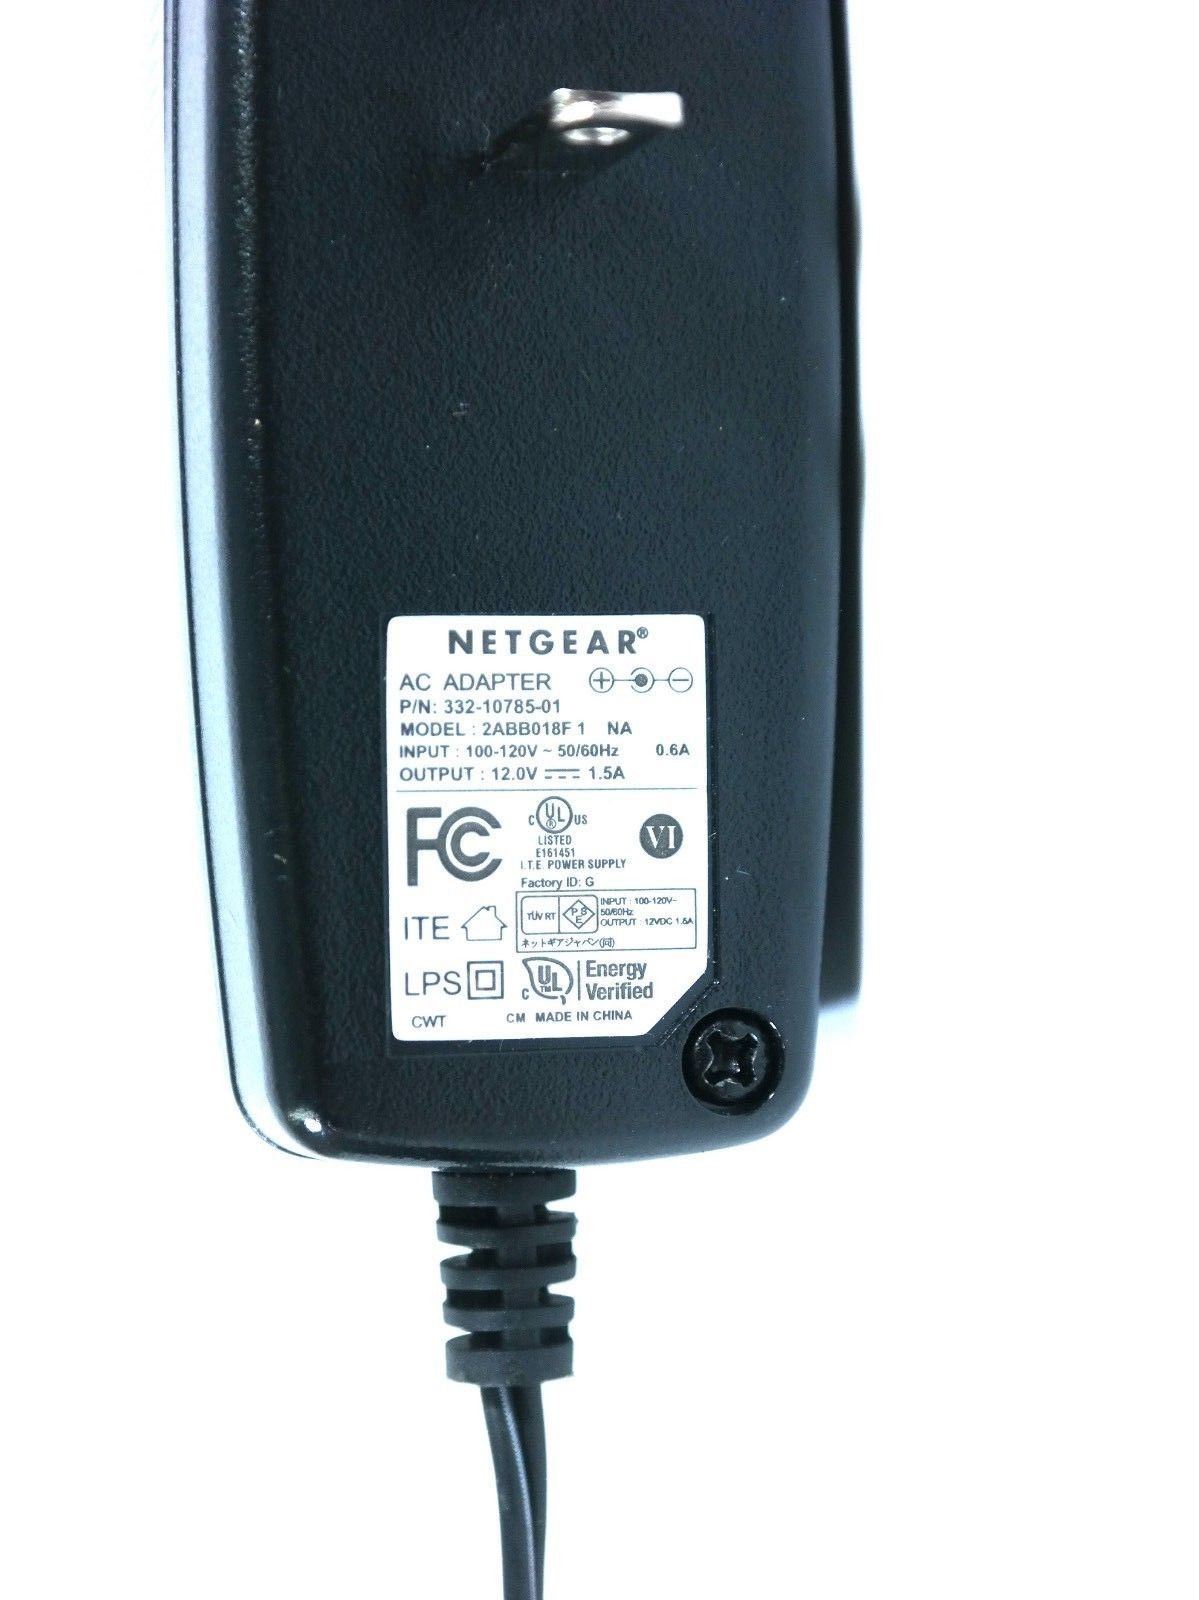 NEW 12V 1.5A Netgear 2ABB018F 1 NA 332-10785-01 AC Adapter - Click Image to Close